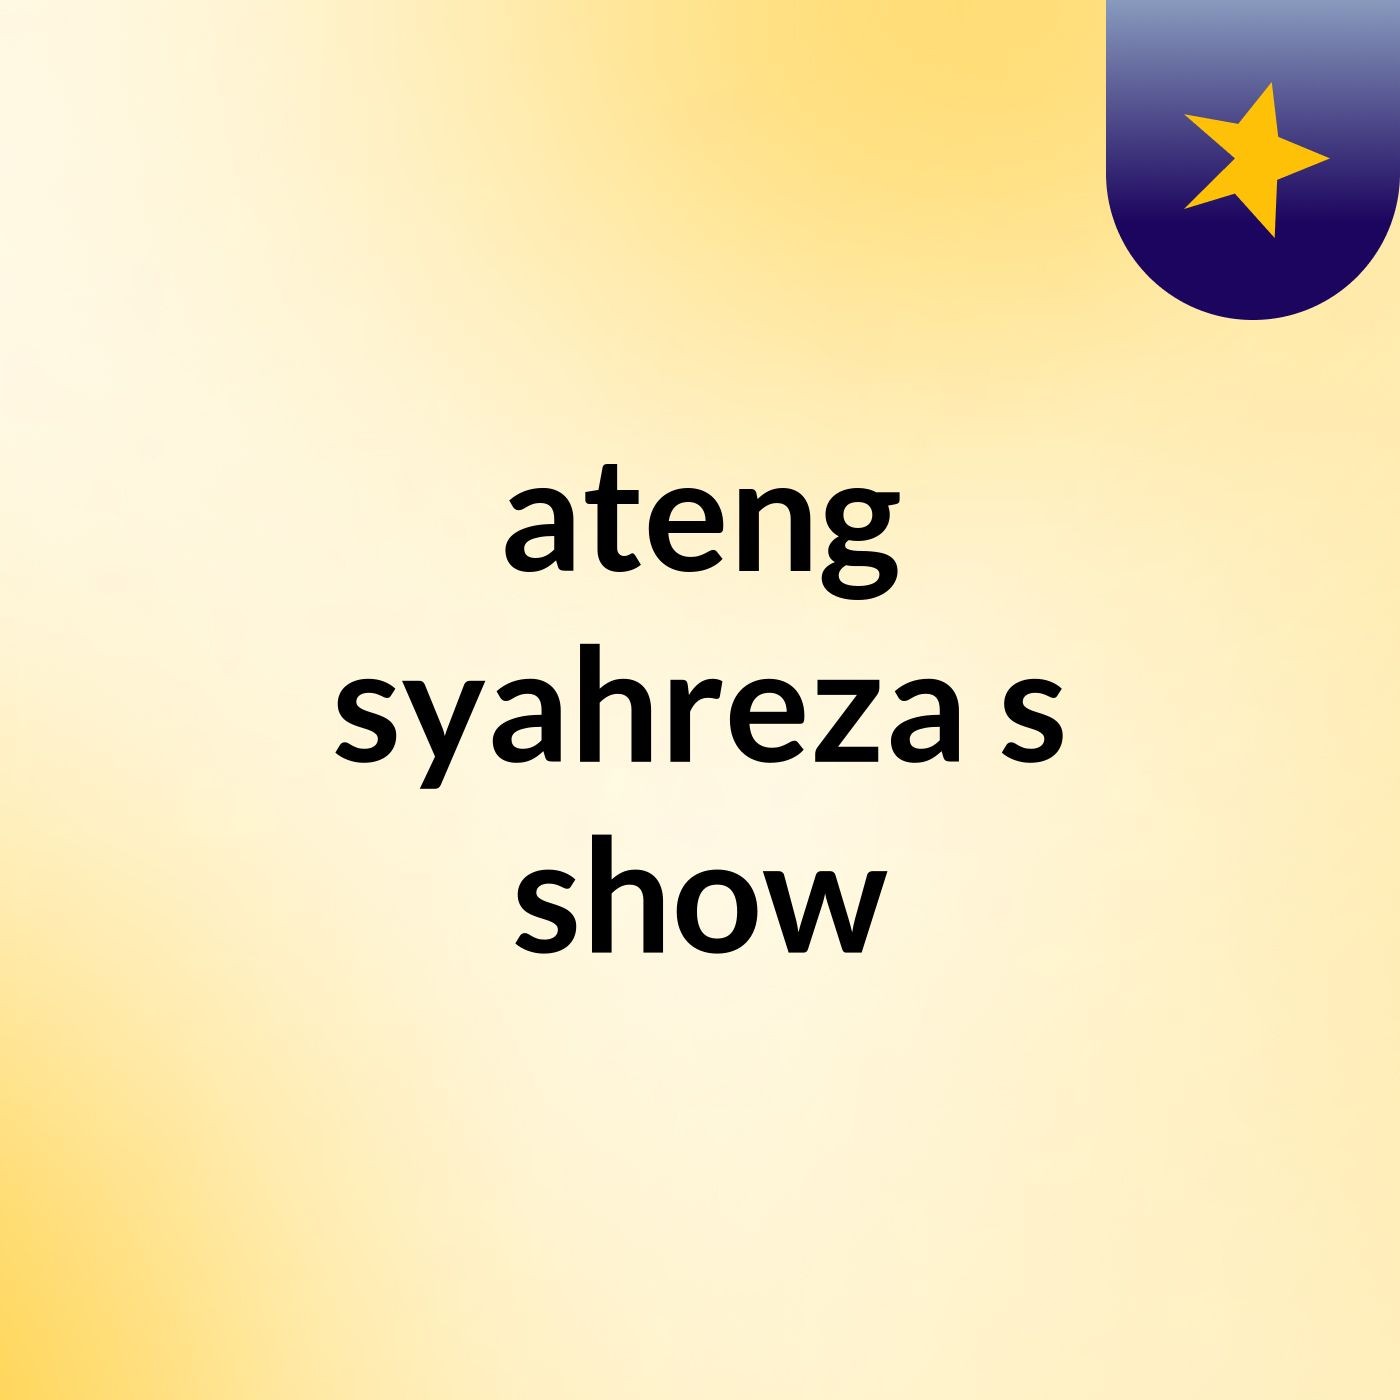 ateng syahreza's show